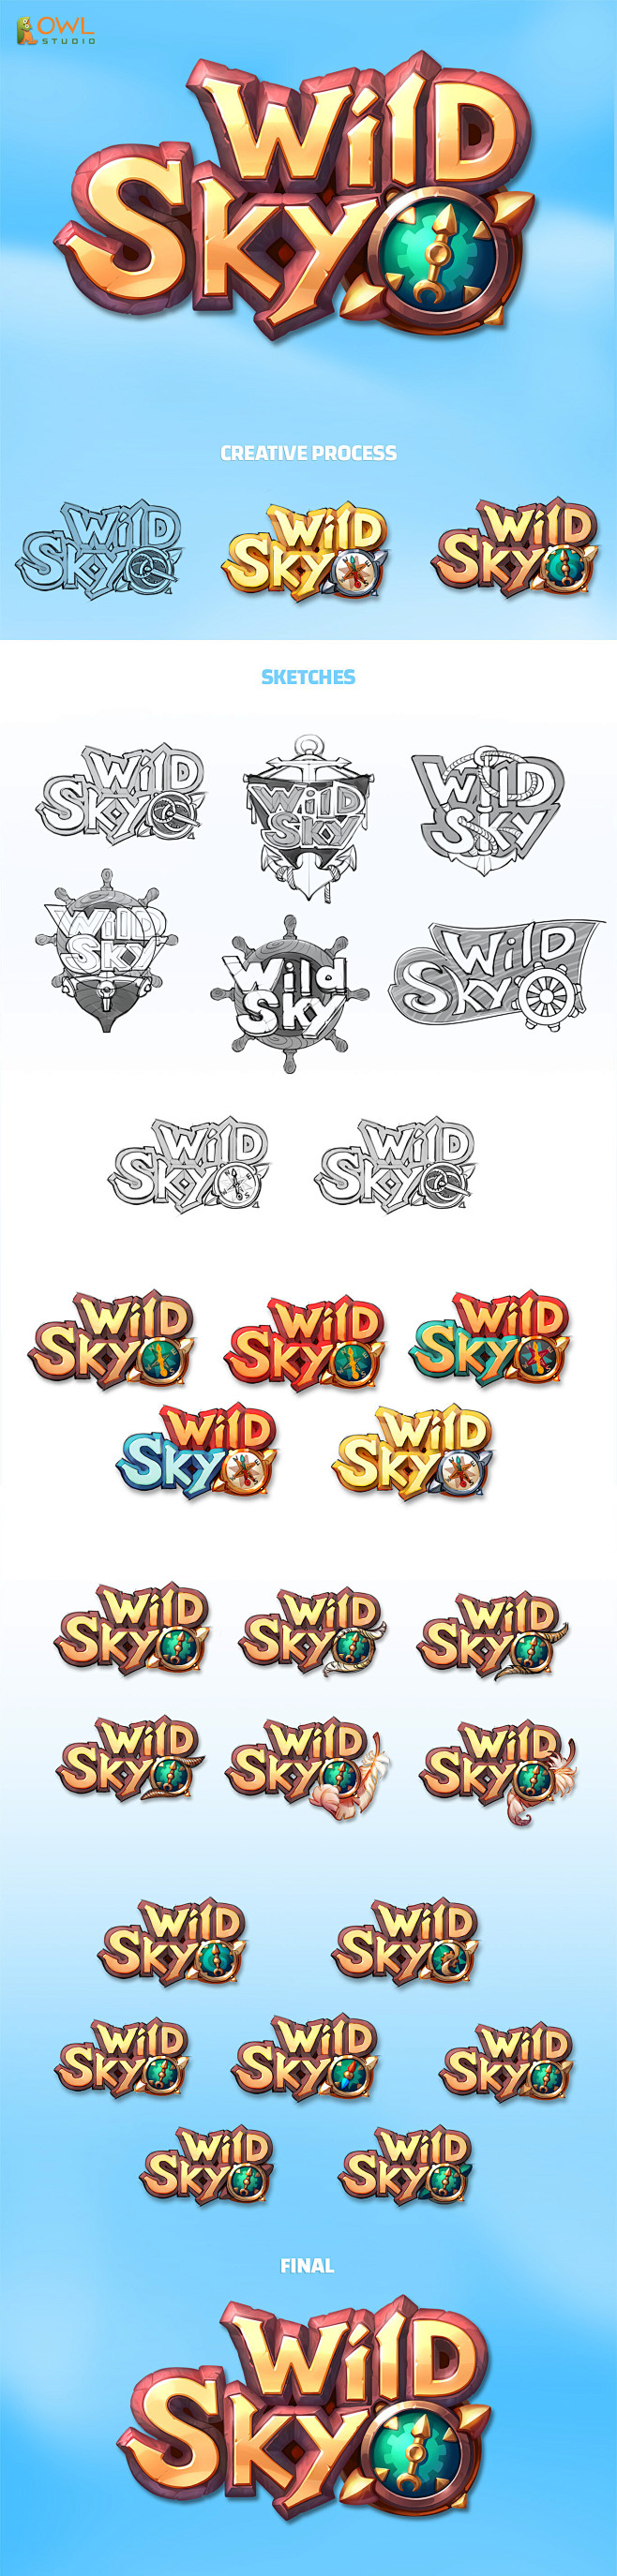 Logo - Wild Sky